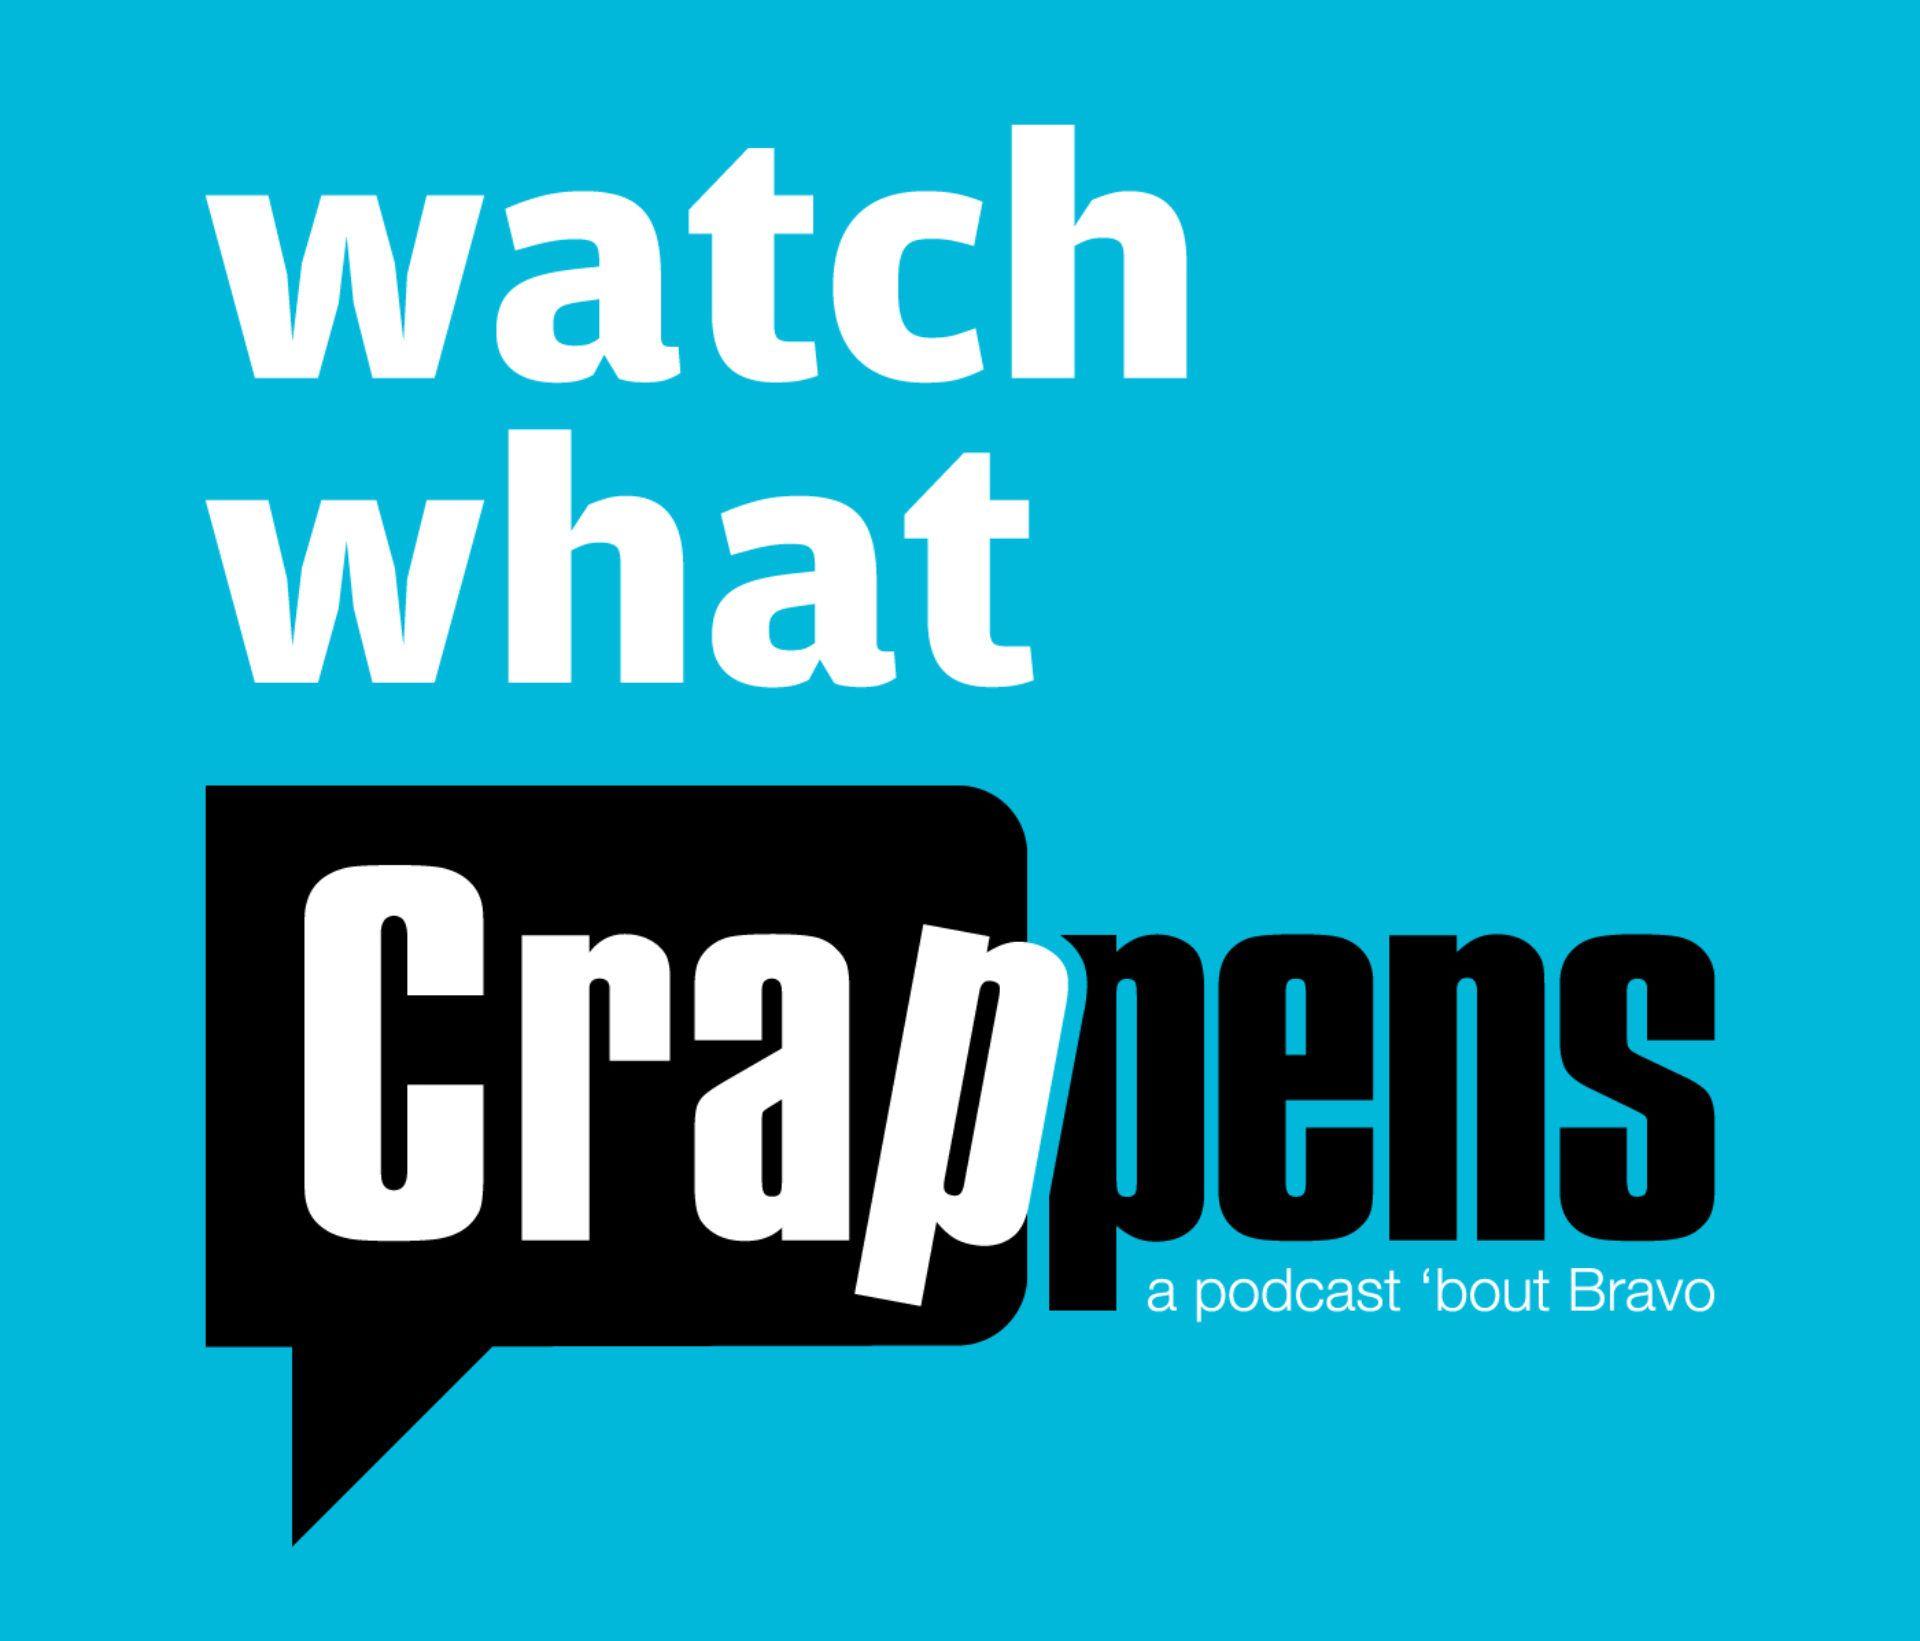 Bravotv.com Logo - Watch What Crappens Podcast